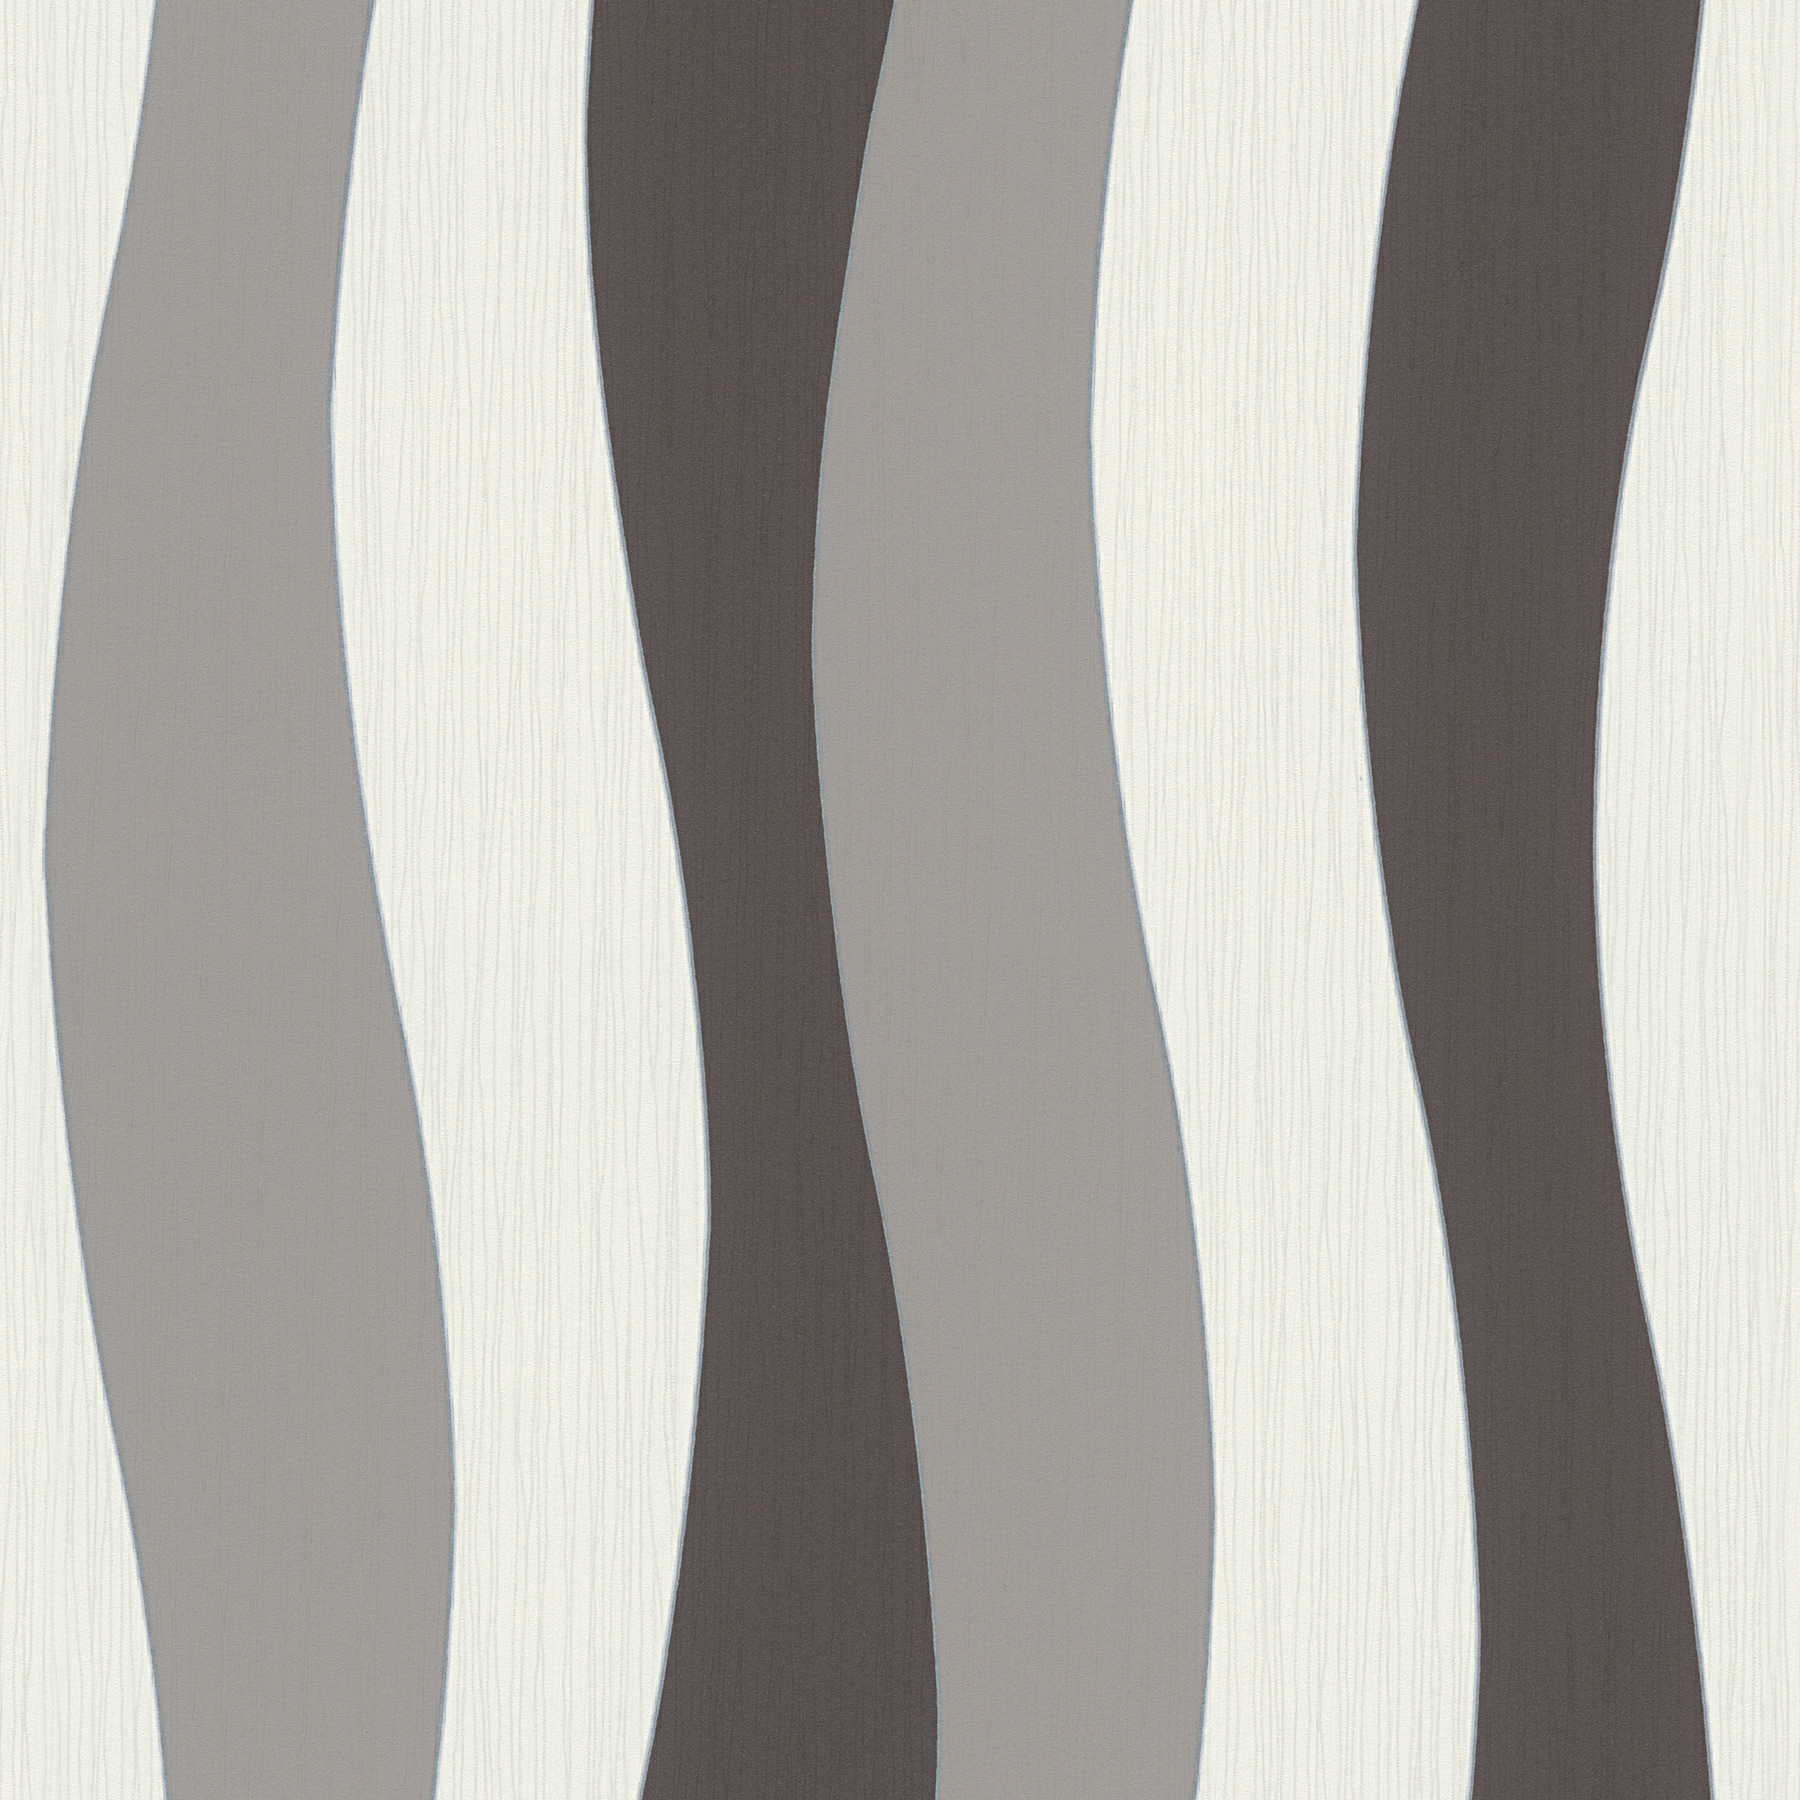 Wallpaper lines design with metallic effect - cream, grey
